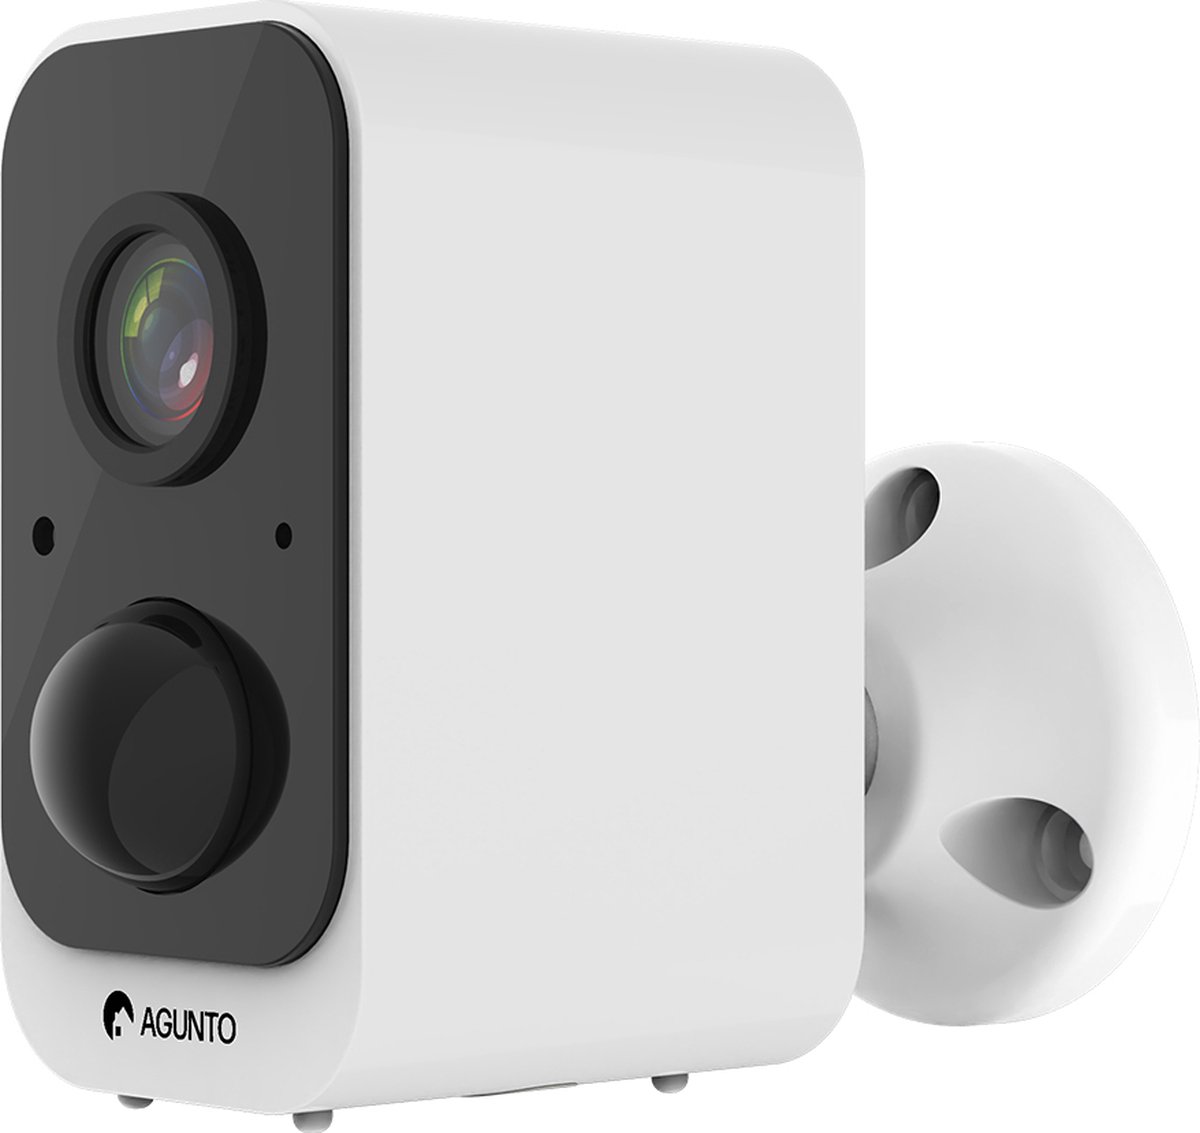 Agunto AGU-BA1 Beveiligingscamera voor buiten - Buitencamera - Draadloos met ingebouwde accu - IP camera - Google Home - Nachtzicht - Weersbestendig - Bewakingscamera - WiFi - Werkt met app